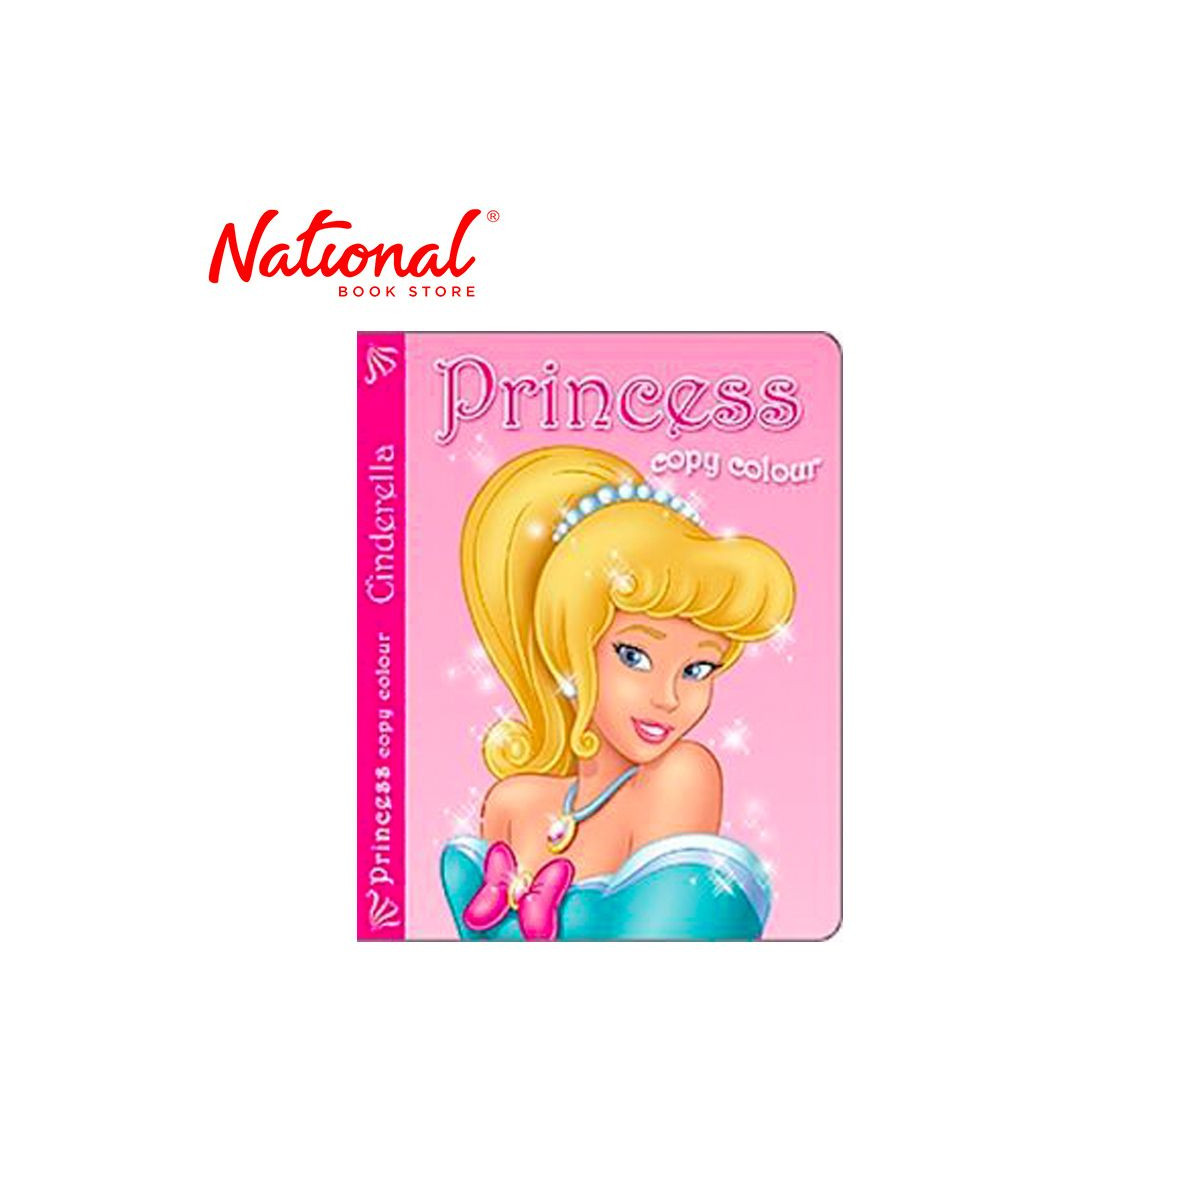 Princess Copy Colour PC1-6 CIN - Coloring Book